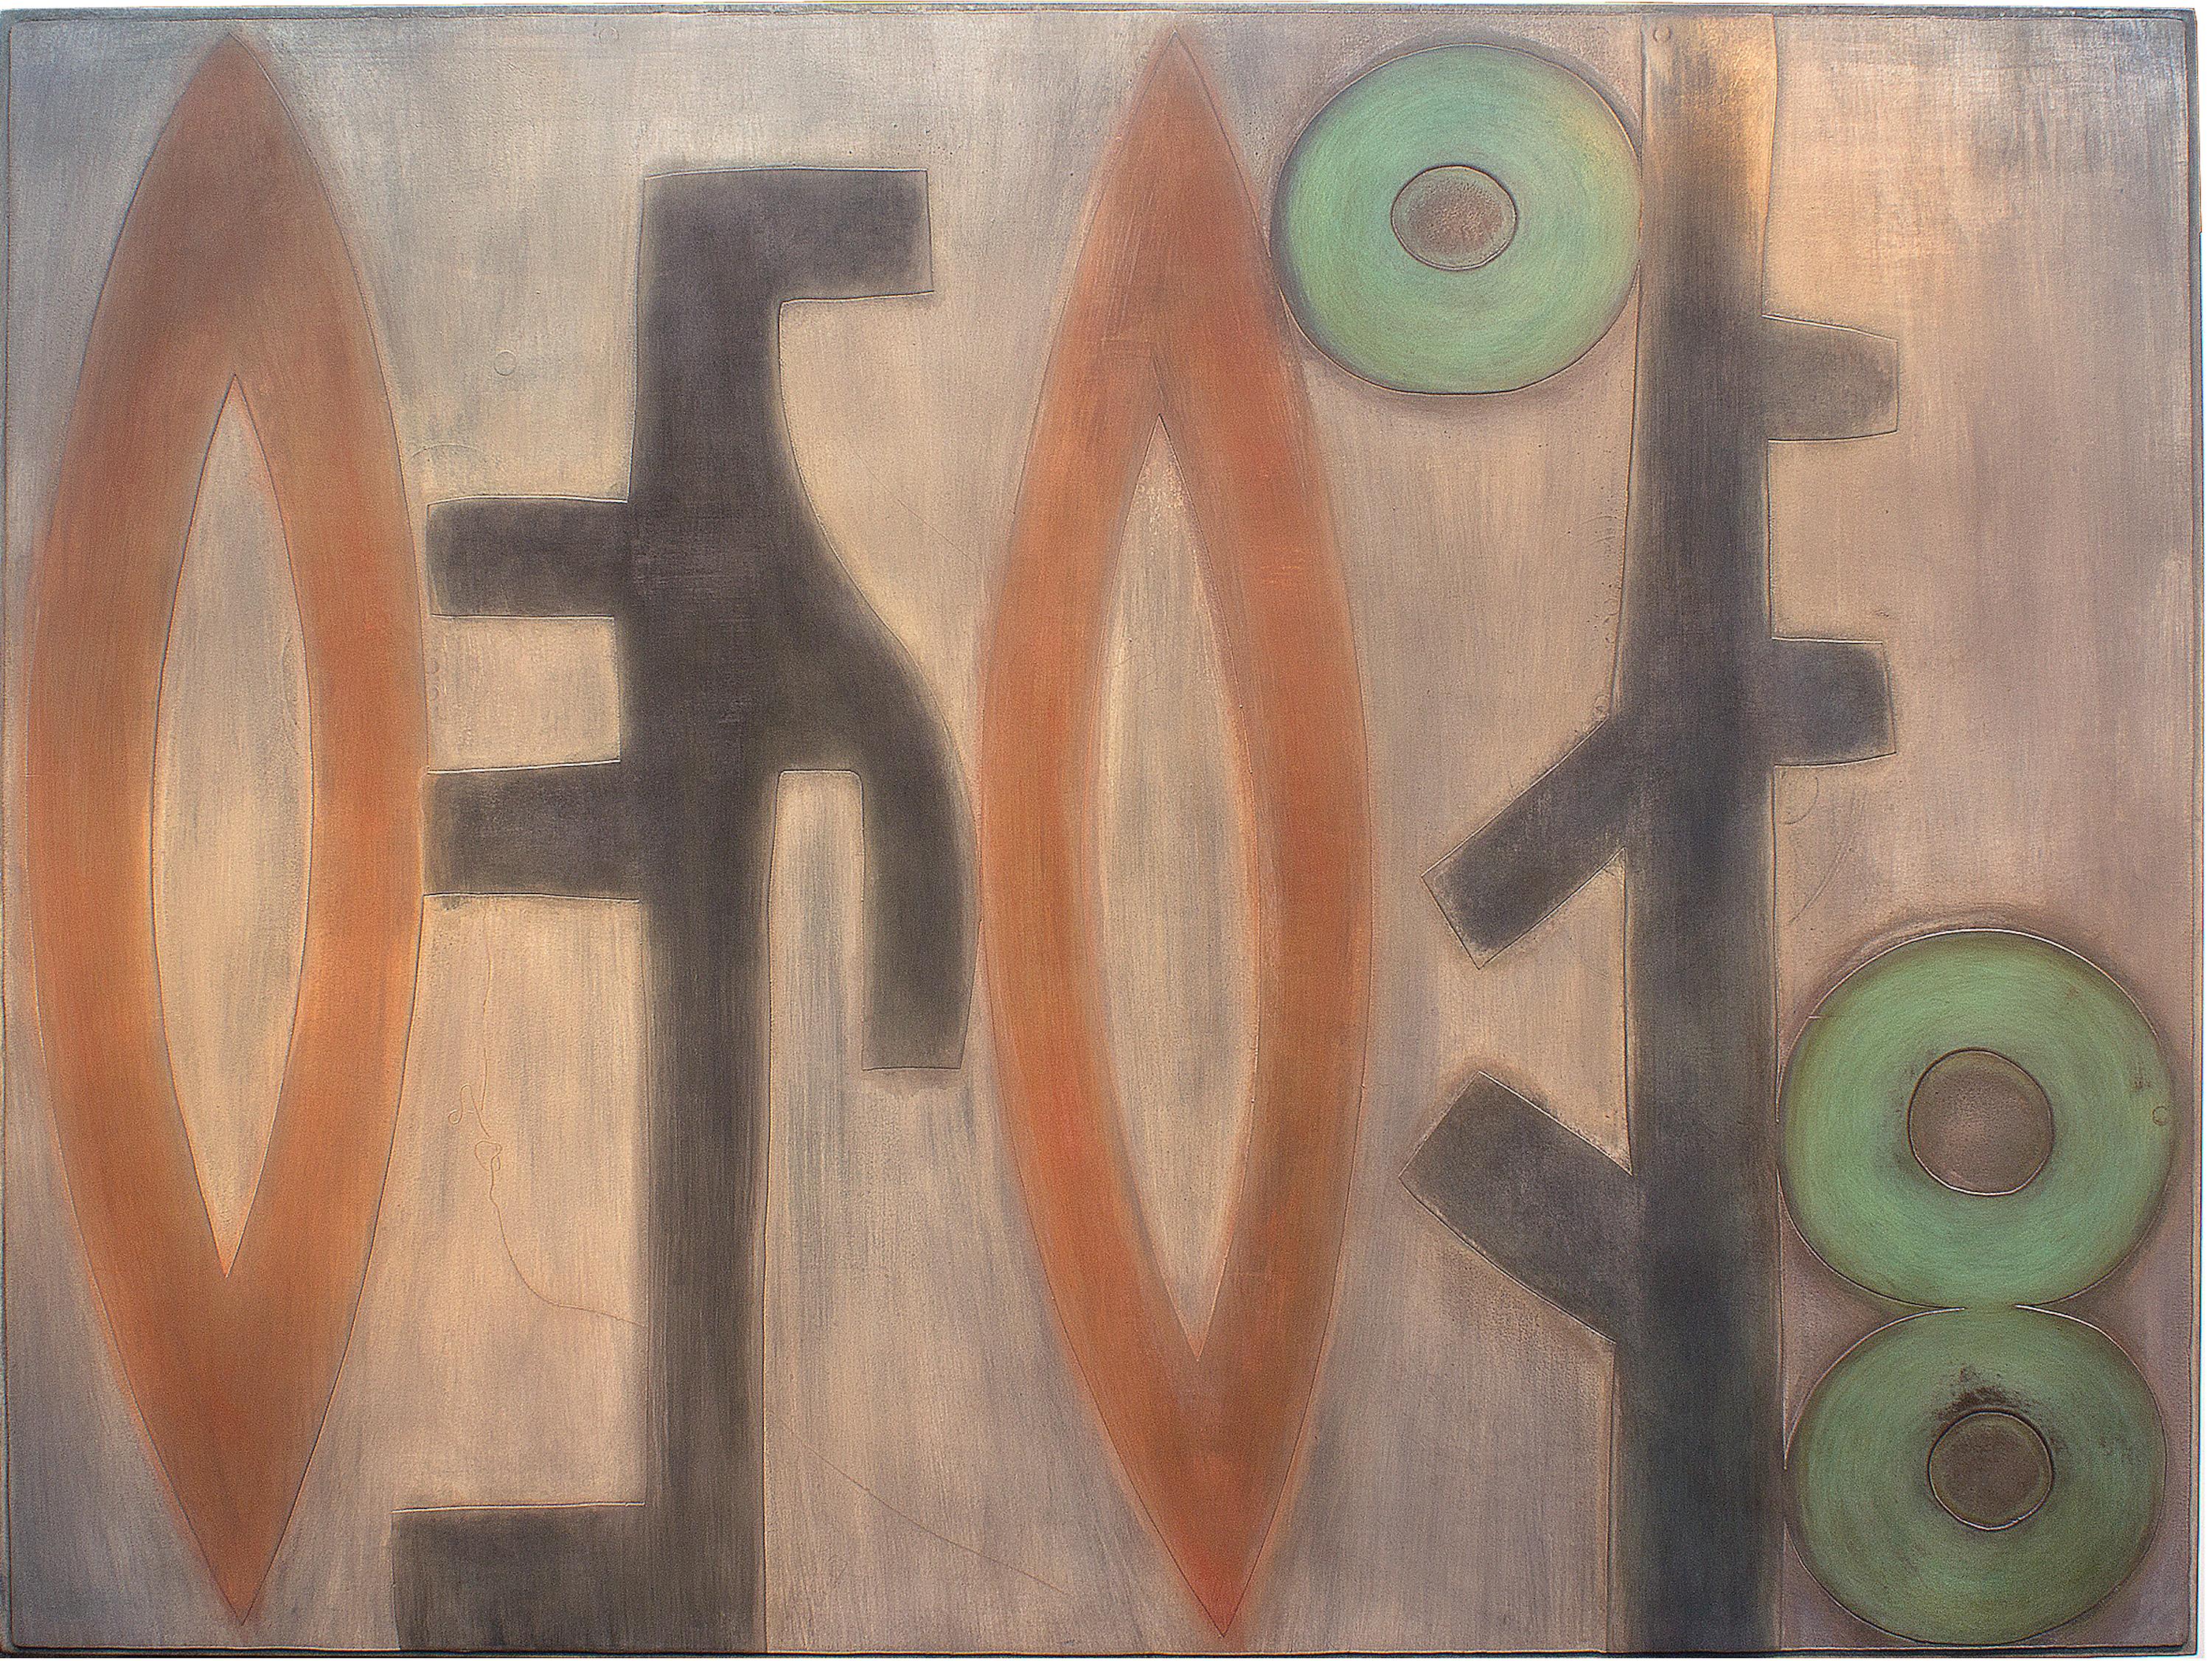 Abstract Painting Jeffrey Maron - Récolte, peinture abstraite sur métal, tenture murale, caoutchouc, rouge vert, marron, cuivre